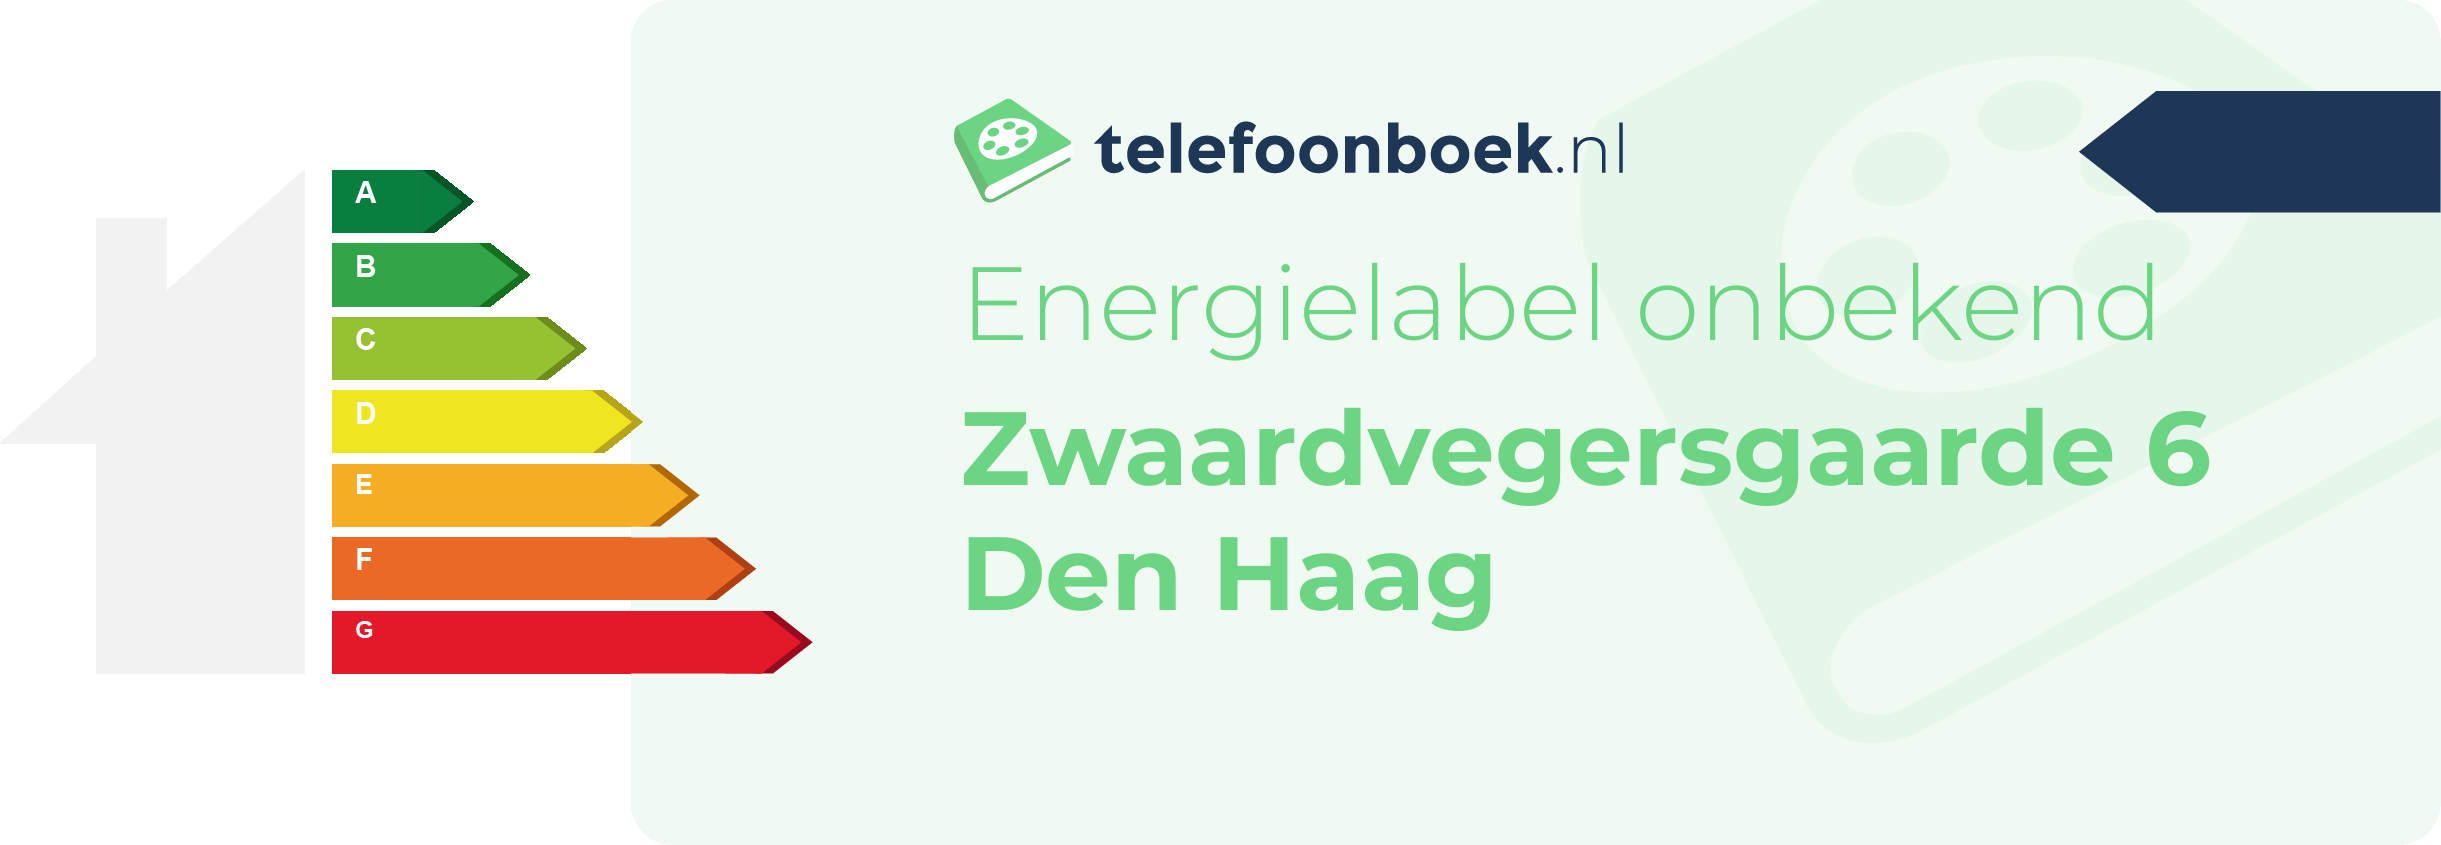 Energielabel Zwaardvegersgaarde 6 Den Haag